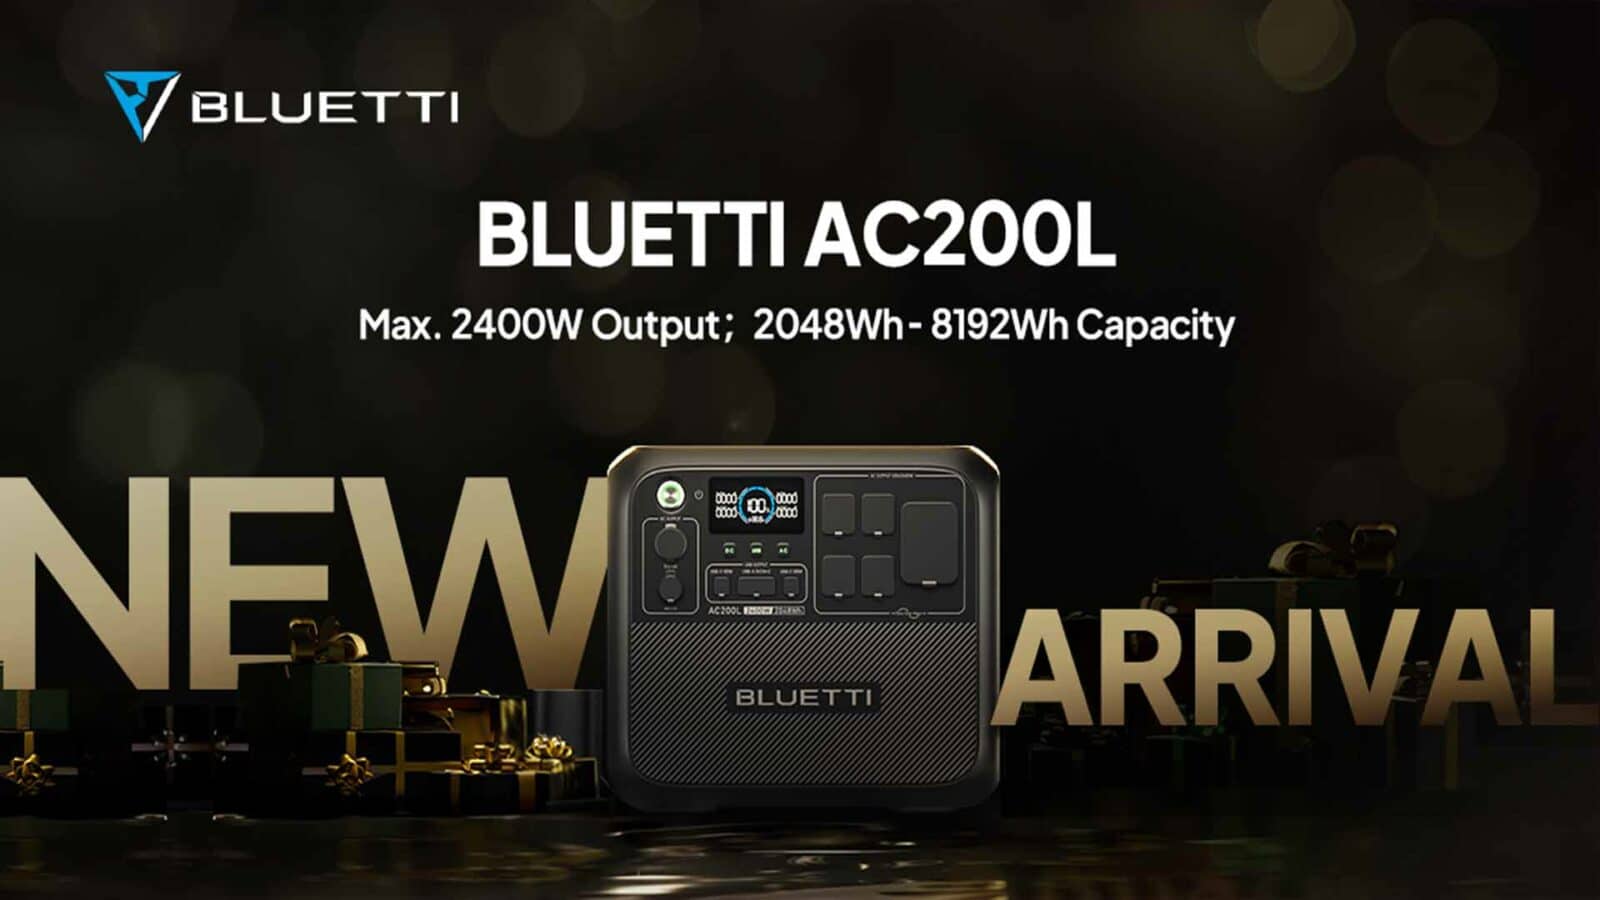 bluetti ac200l รุ่นใหม่ที่มีเอาต์พุตสูงสุด 2400w และความจุ 8192wh มาถึงแล้ว